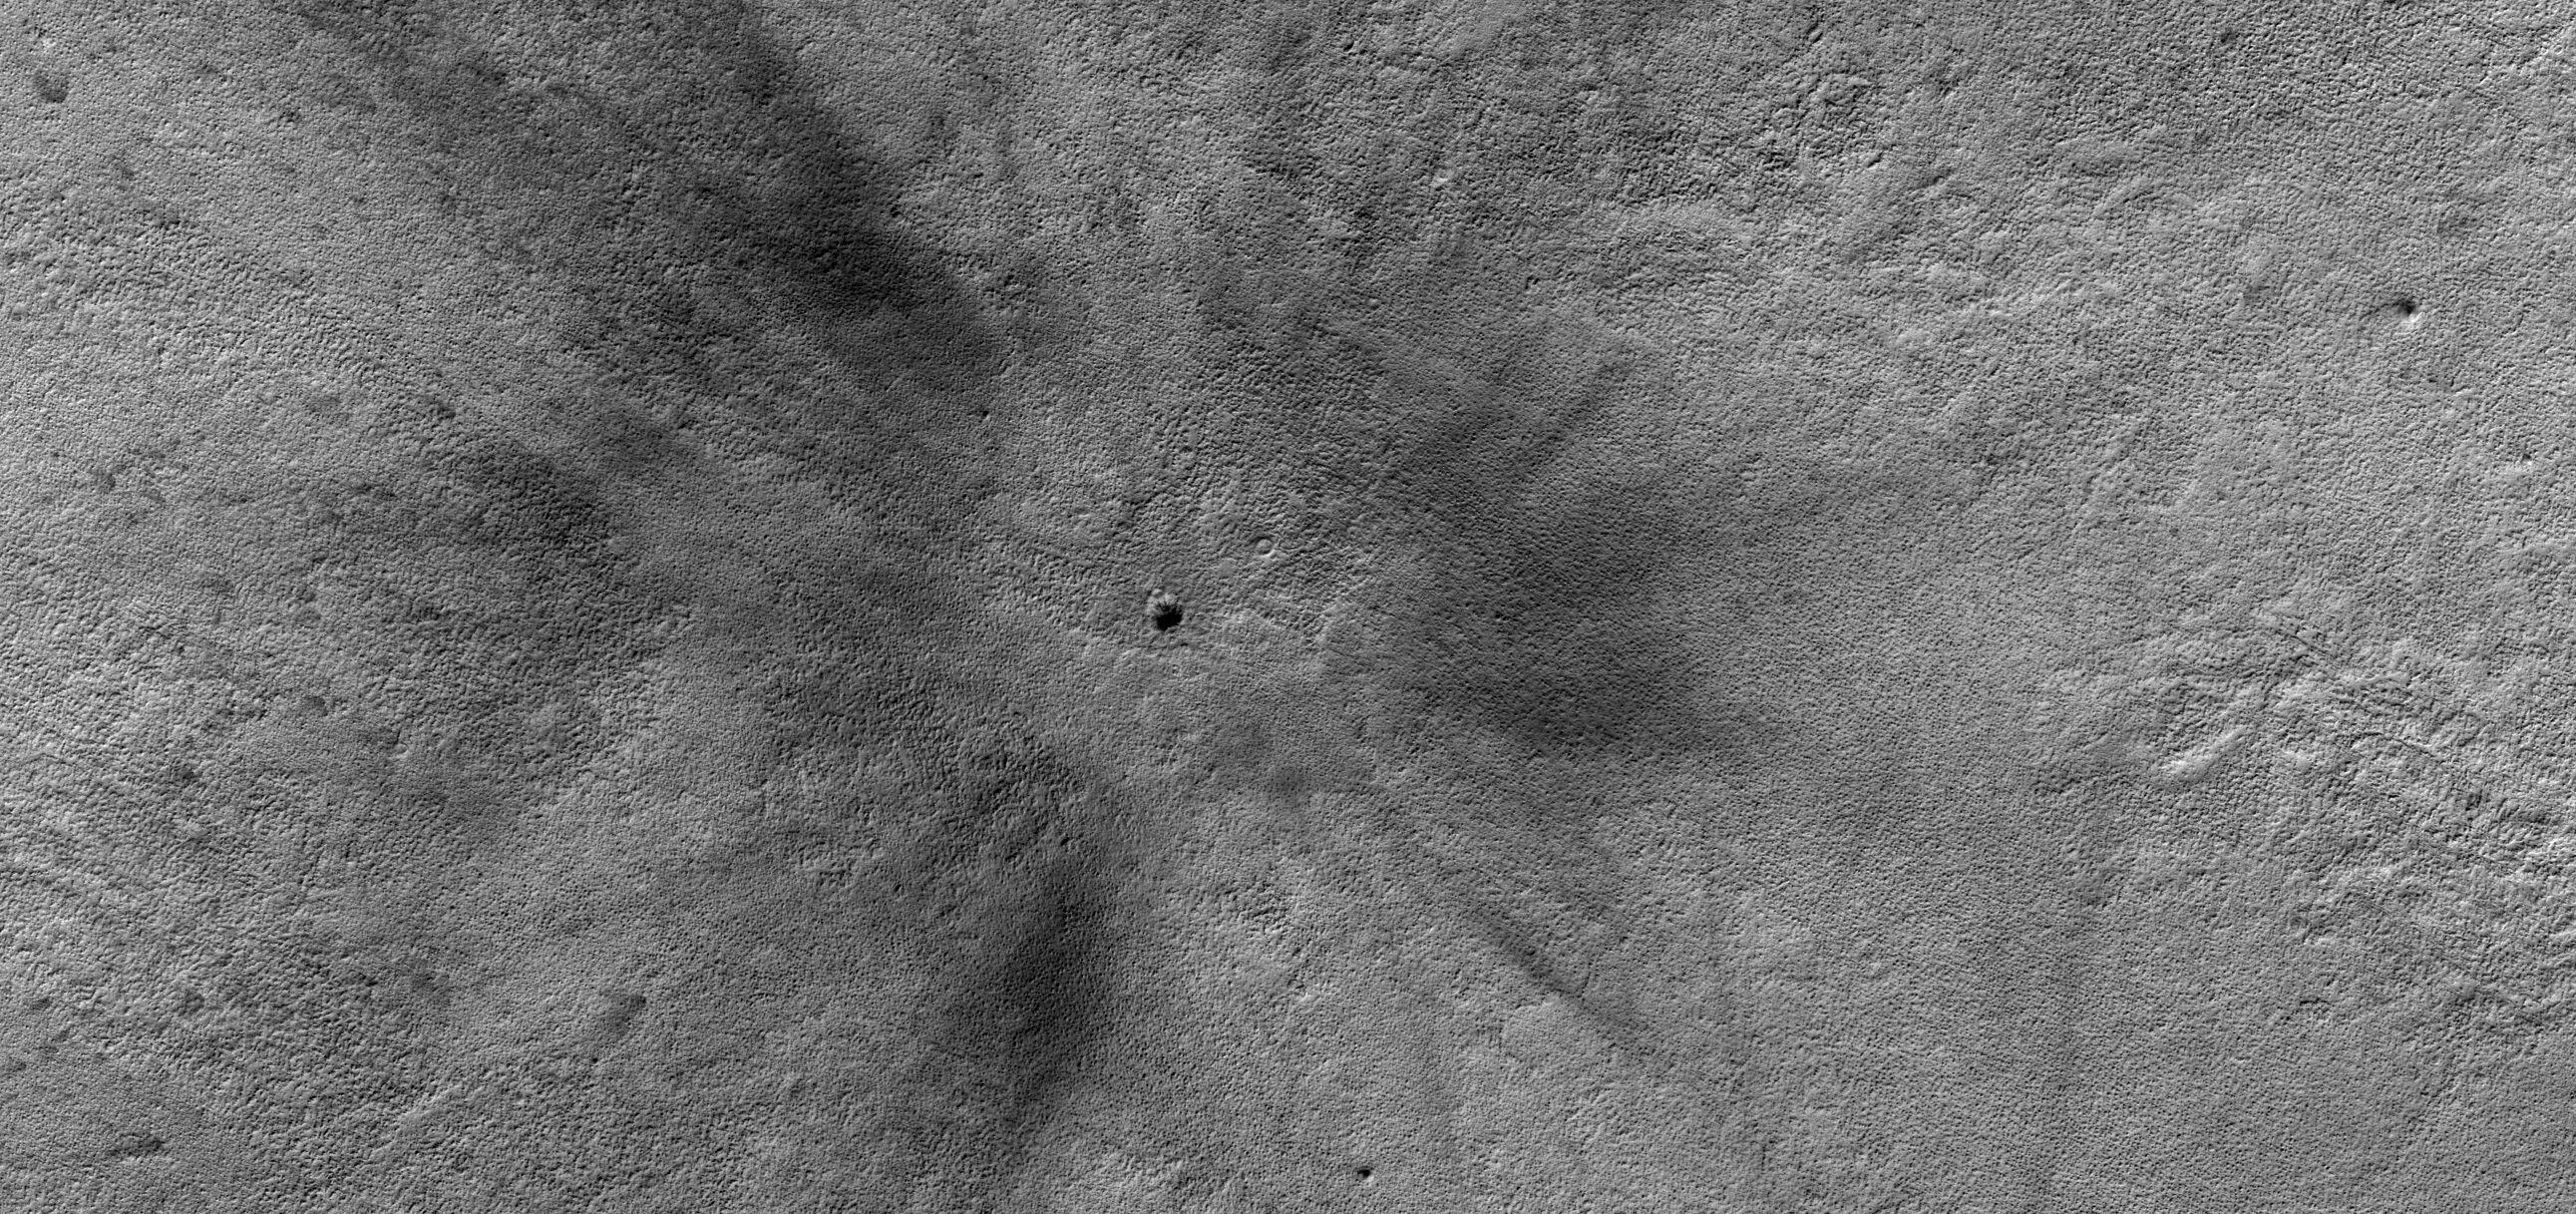 Vista general del cráter causado por el impacto detectado el día de Nochebuena.